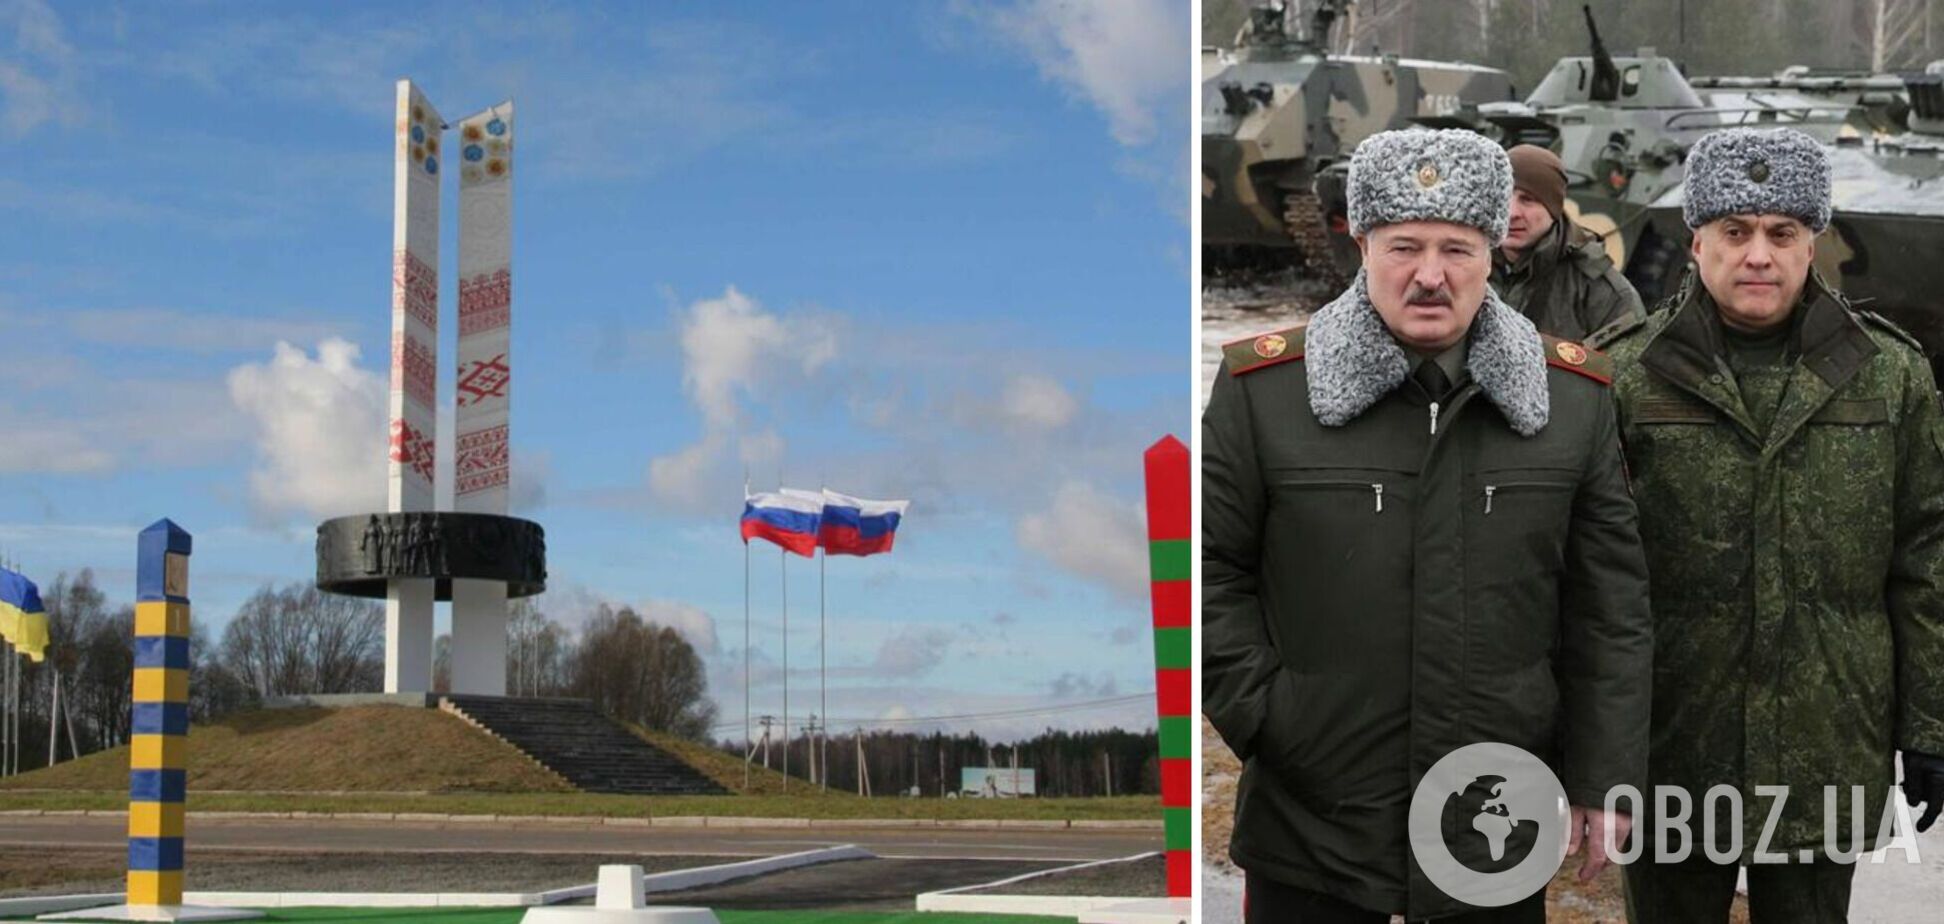 Северные рубежи полностью под контролем ВСУ: Наев о проверке боевой готовности в Беларуси и ситуации на границе